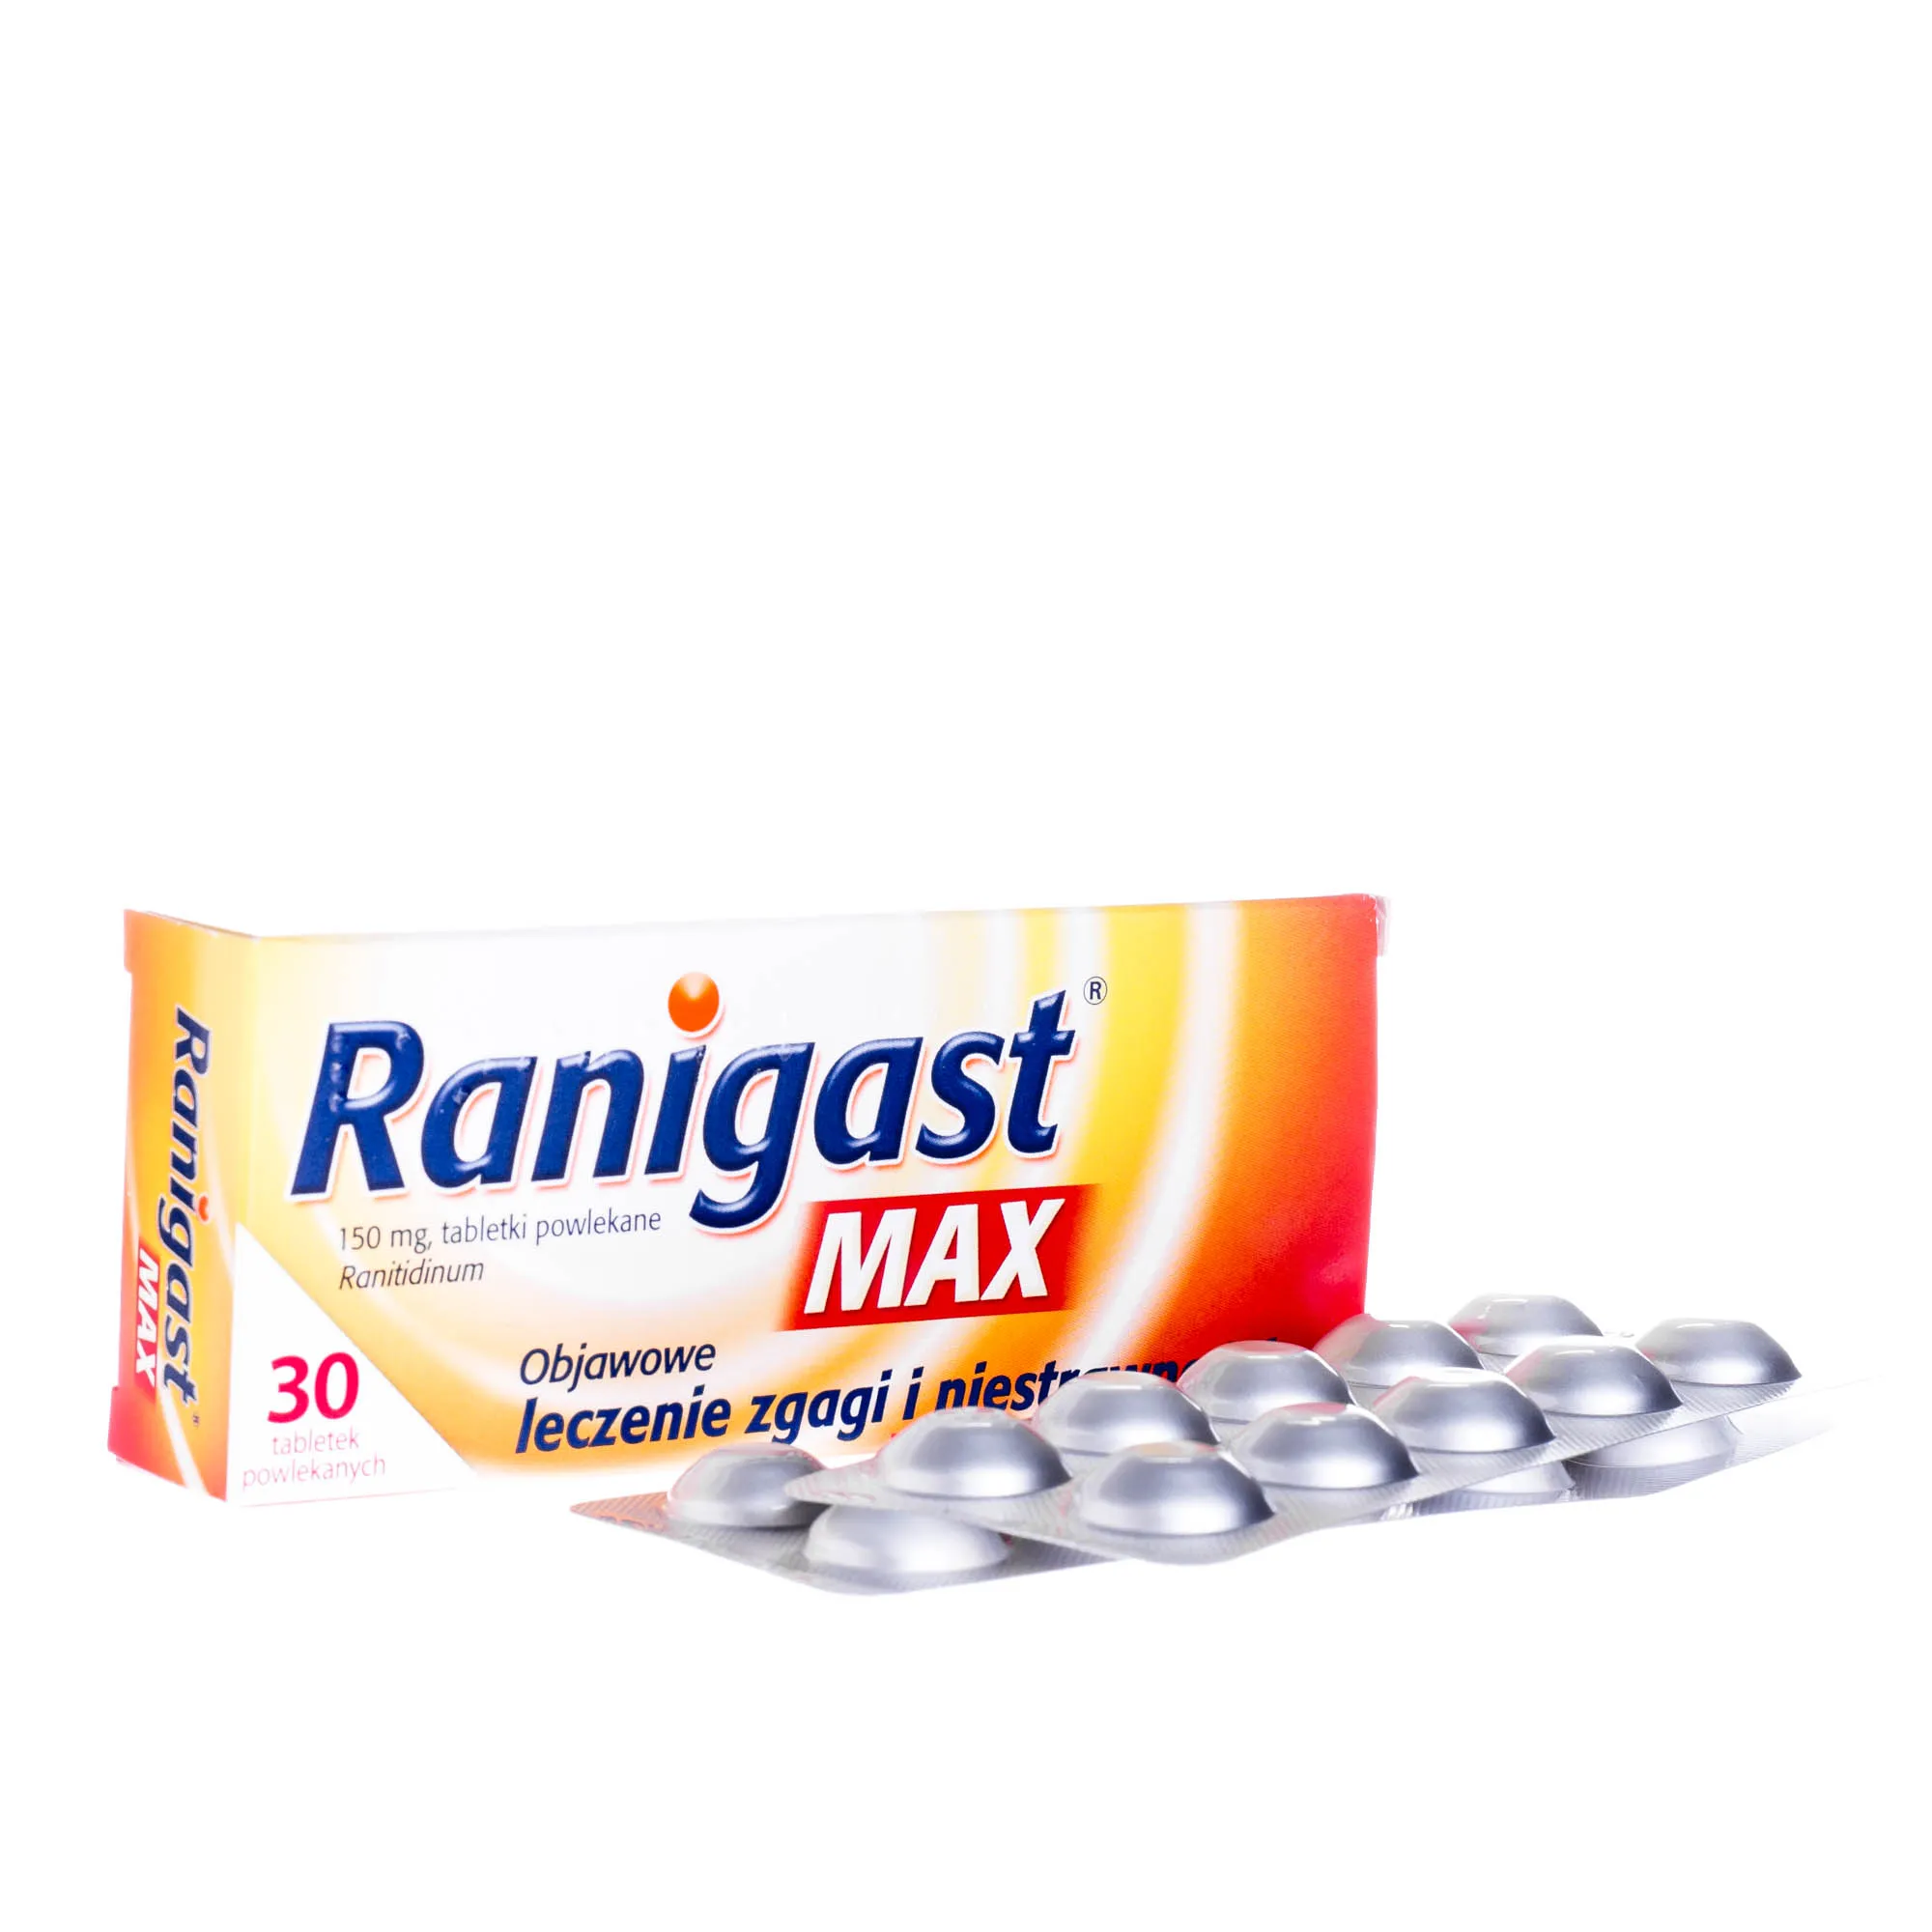 Ranigast Max 150 mg - 30 tabetek powlekanych stosowanych przy leczeniu zgagi i niestrawności